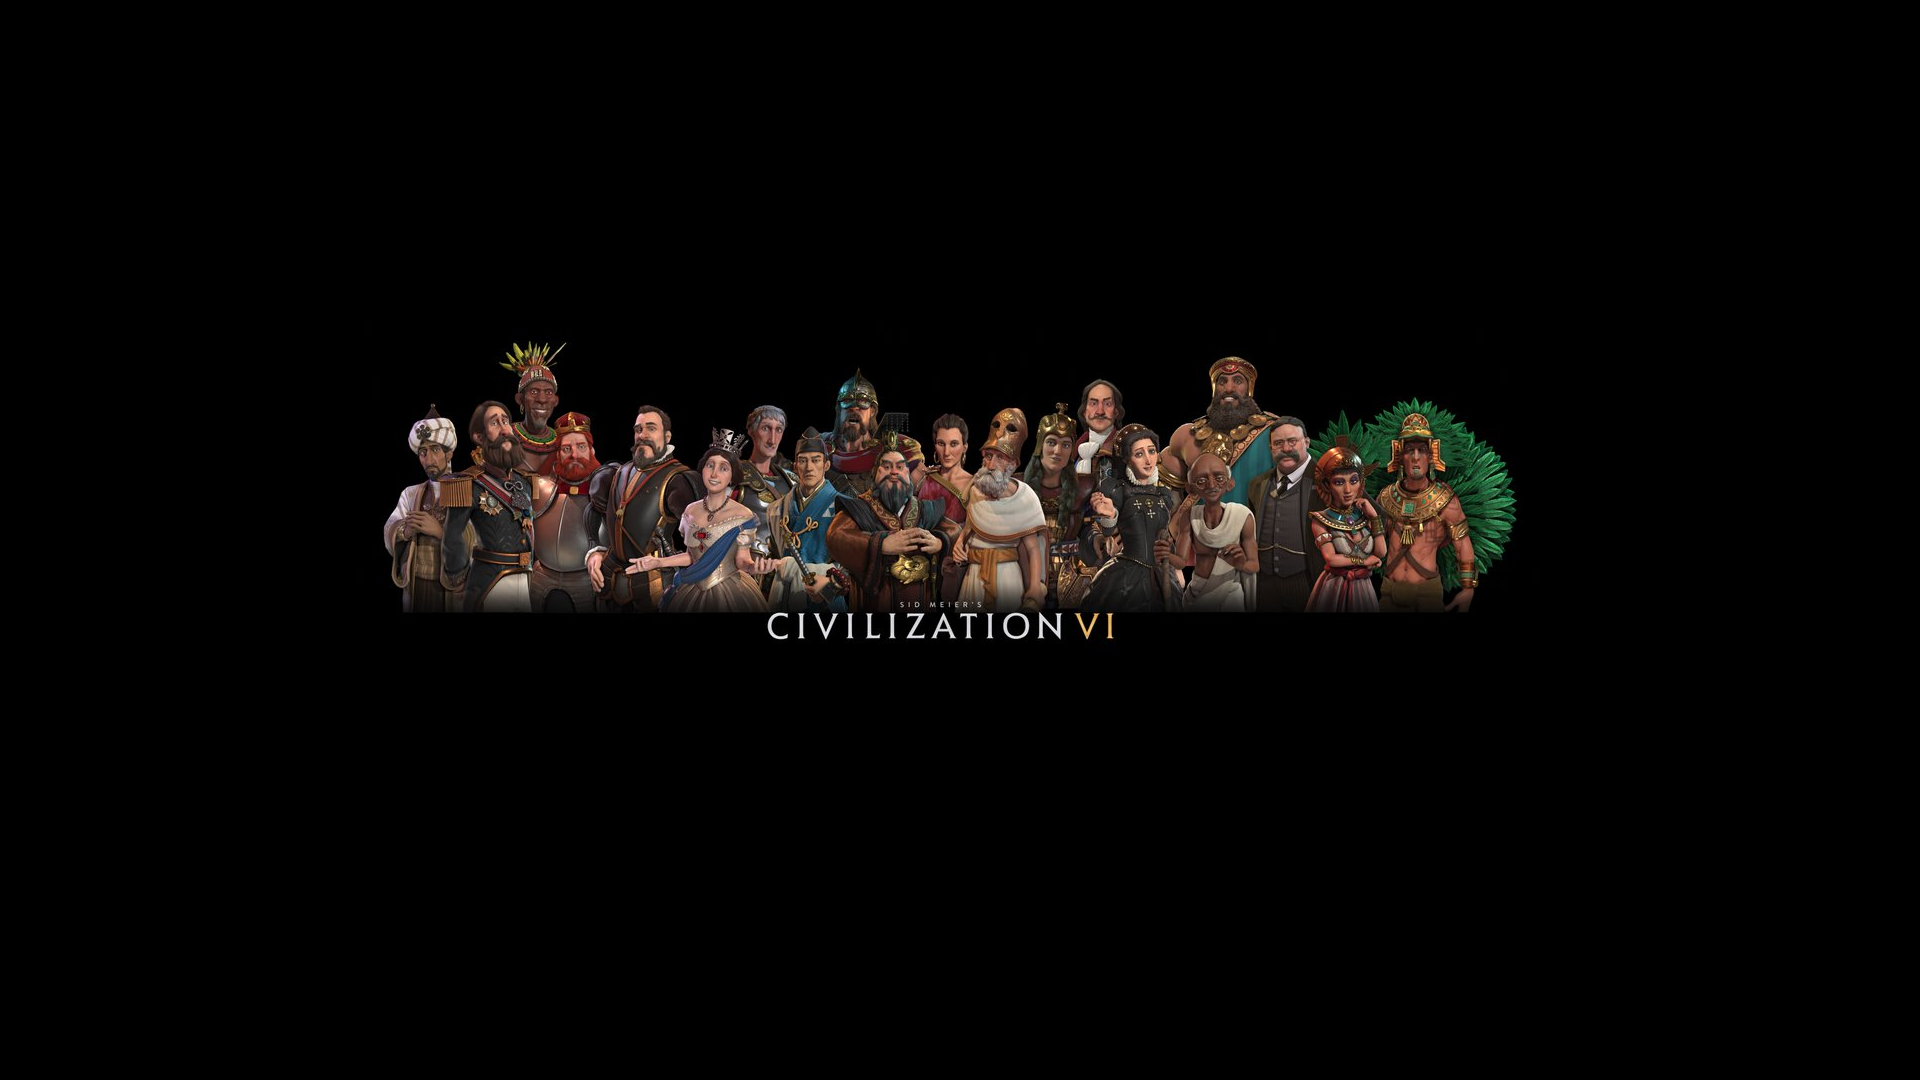 Civilization VI Wallpapers